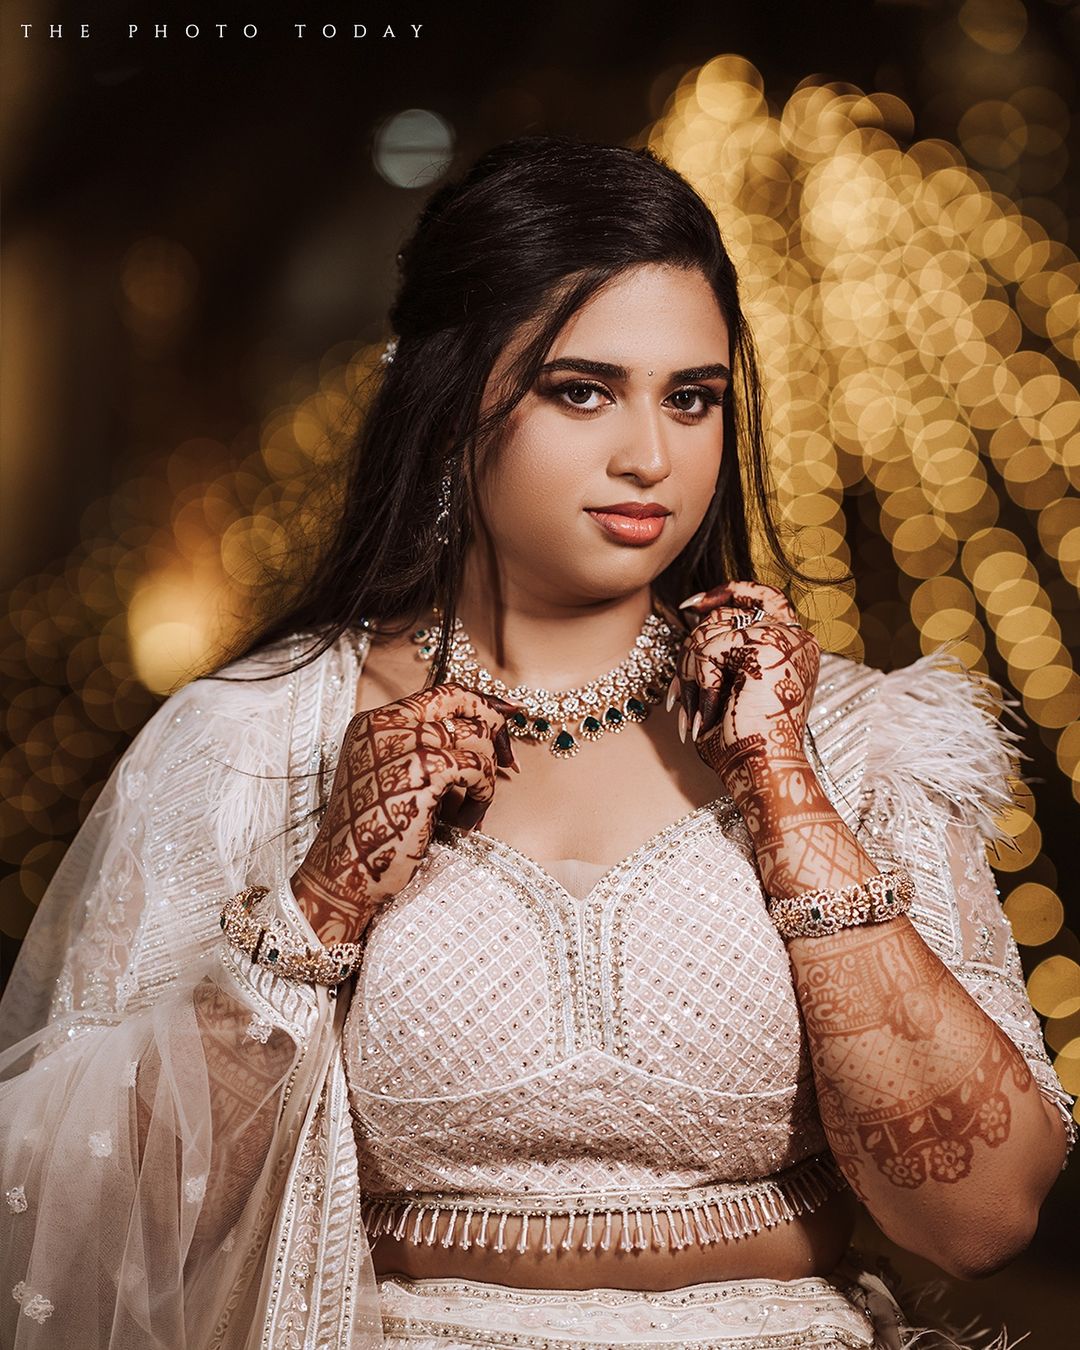 Swathi Kumaresh and Mani MDN's Enchanting Bridal Photoshoot by Phototoday Photography